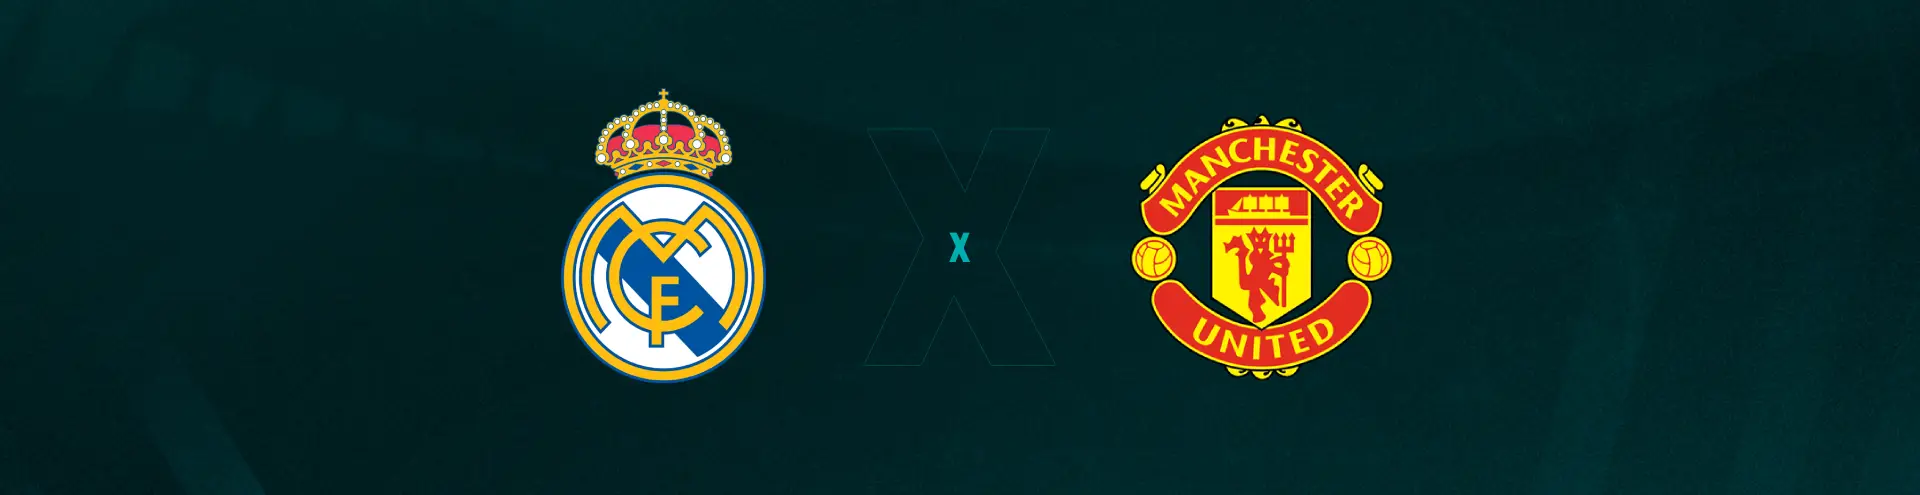 Real Madrid x Manchester United hoje: onde assistir ao vivo o jogo